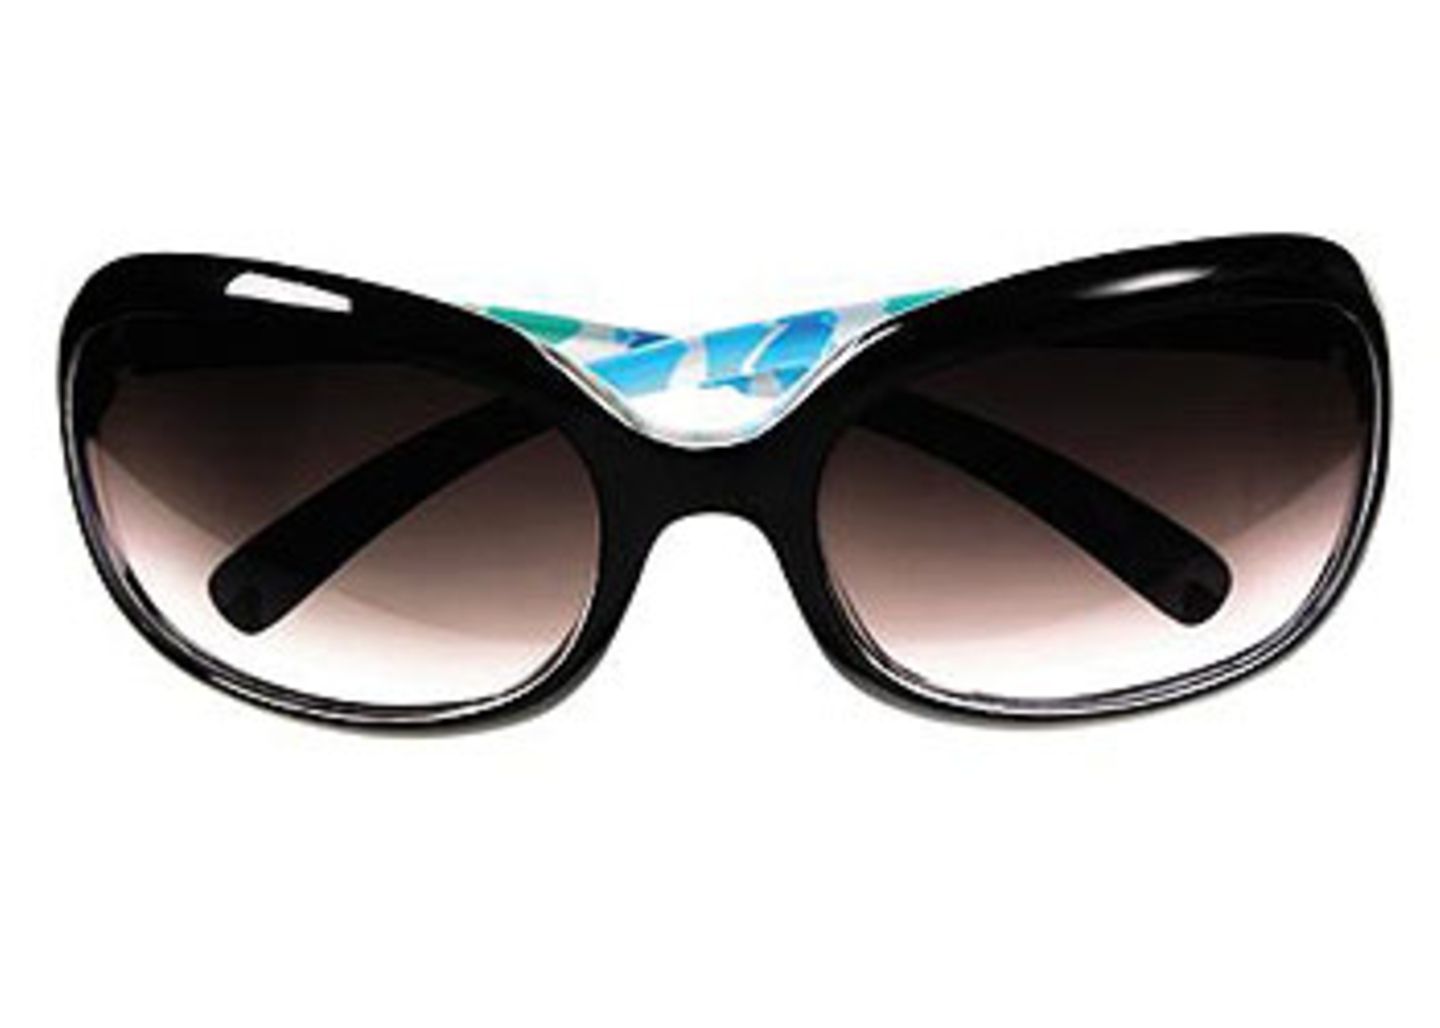 Brille mit schwarz-bunter Kunststofffassung und braunen Gläsern; 19,90 Euro; von H&M